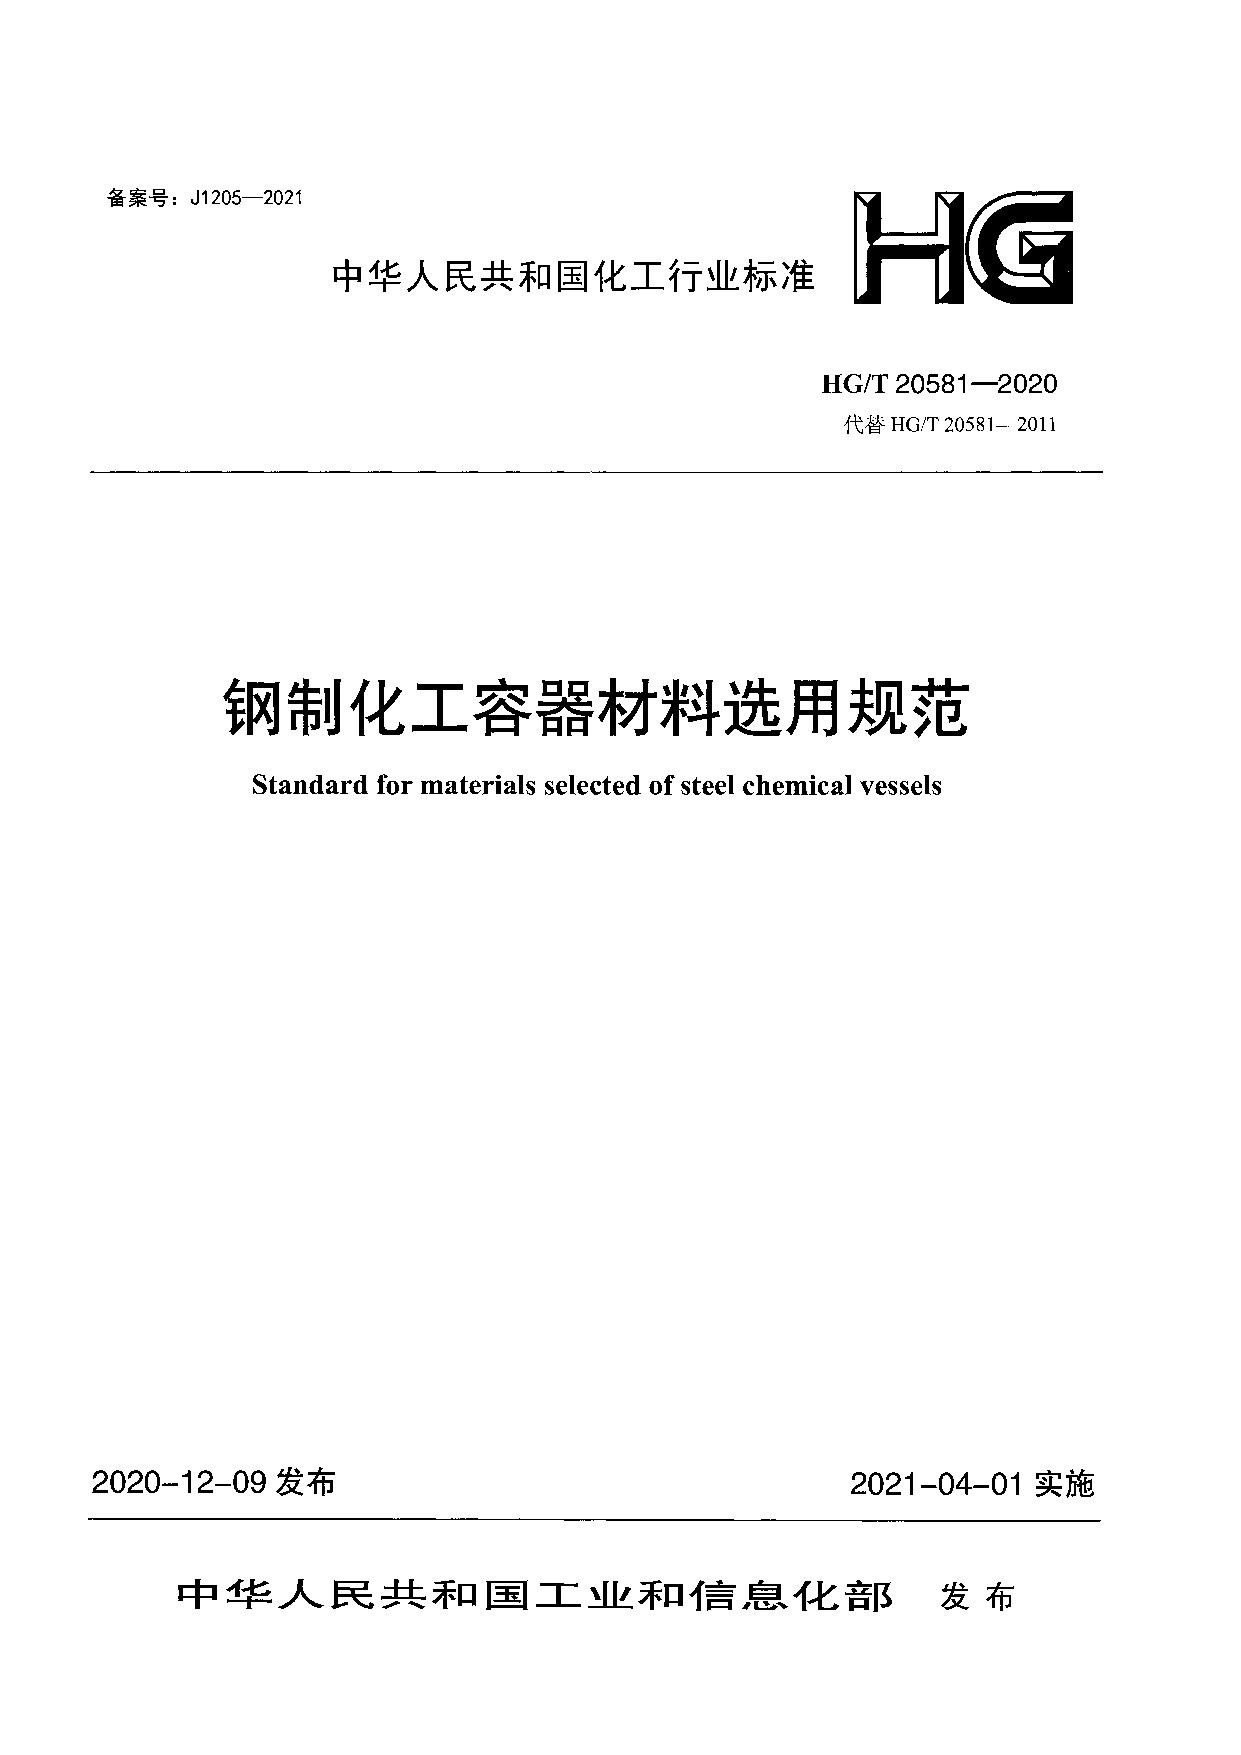 HGT 20581-2020 钢制化工容器材料选用规范